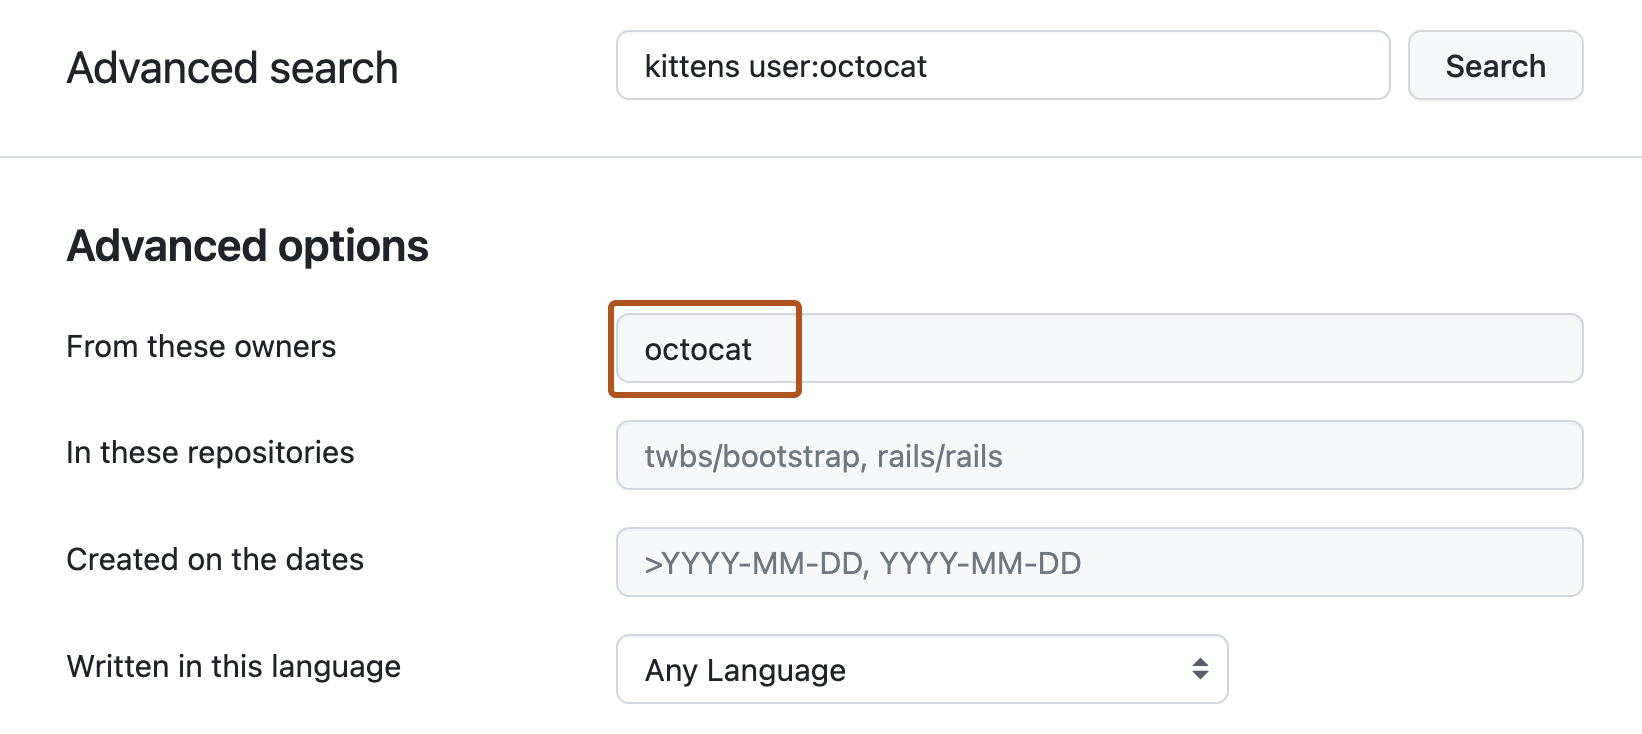 Capture d’écran de la page de recherche avancée. La barre de recherche supérieure est renseignée avec la requête « kittens user:octocat » et, sous la section « Options avancées » située en dessous, la zone de texte « De ces propriétaires » contient le terme « octocat » qui est encadré en orange foncé.